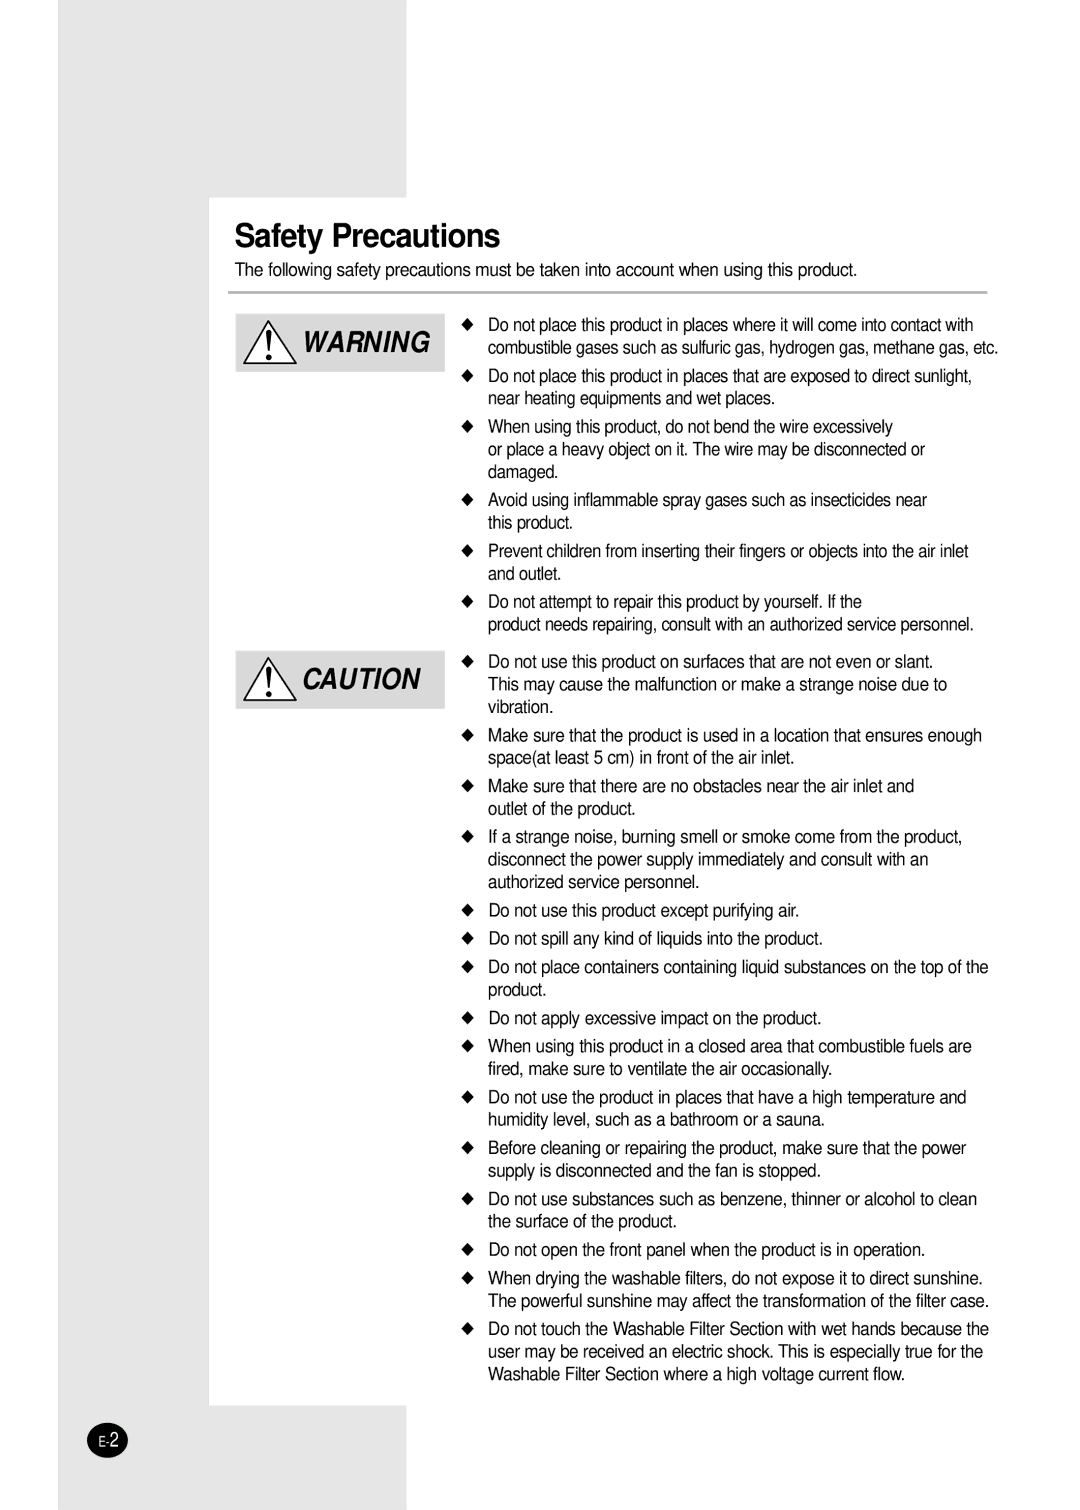 Samsung AC340B/XSG, AC160C-XSH, AC340B-MID, AC160C/XSG, AC340B/MID, AC401BR/MID, AC401BR-MID, AC401BR/XSG Safety Precautions 